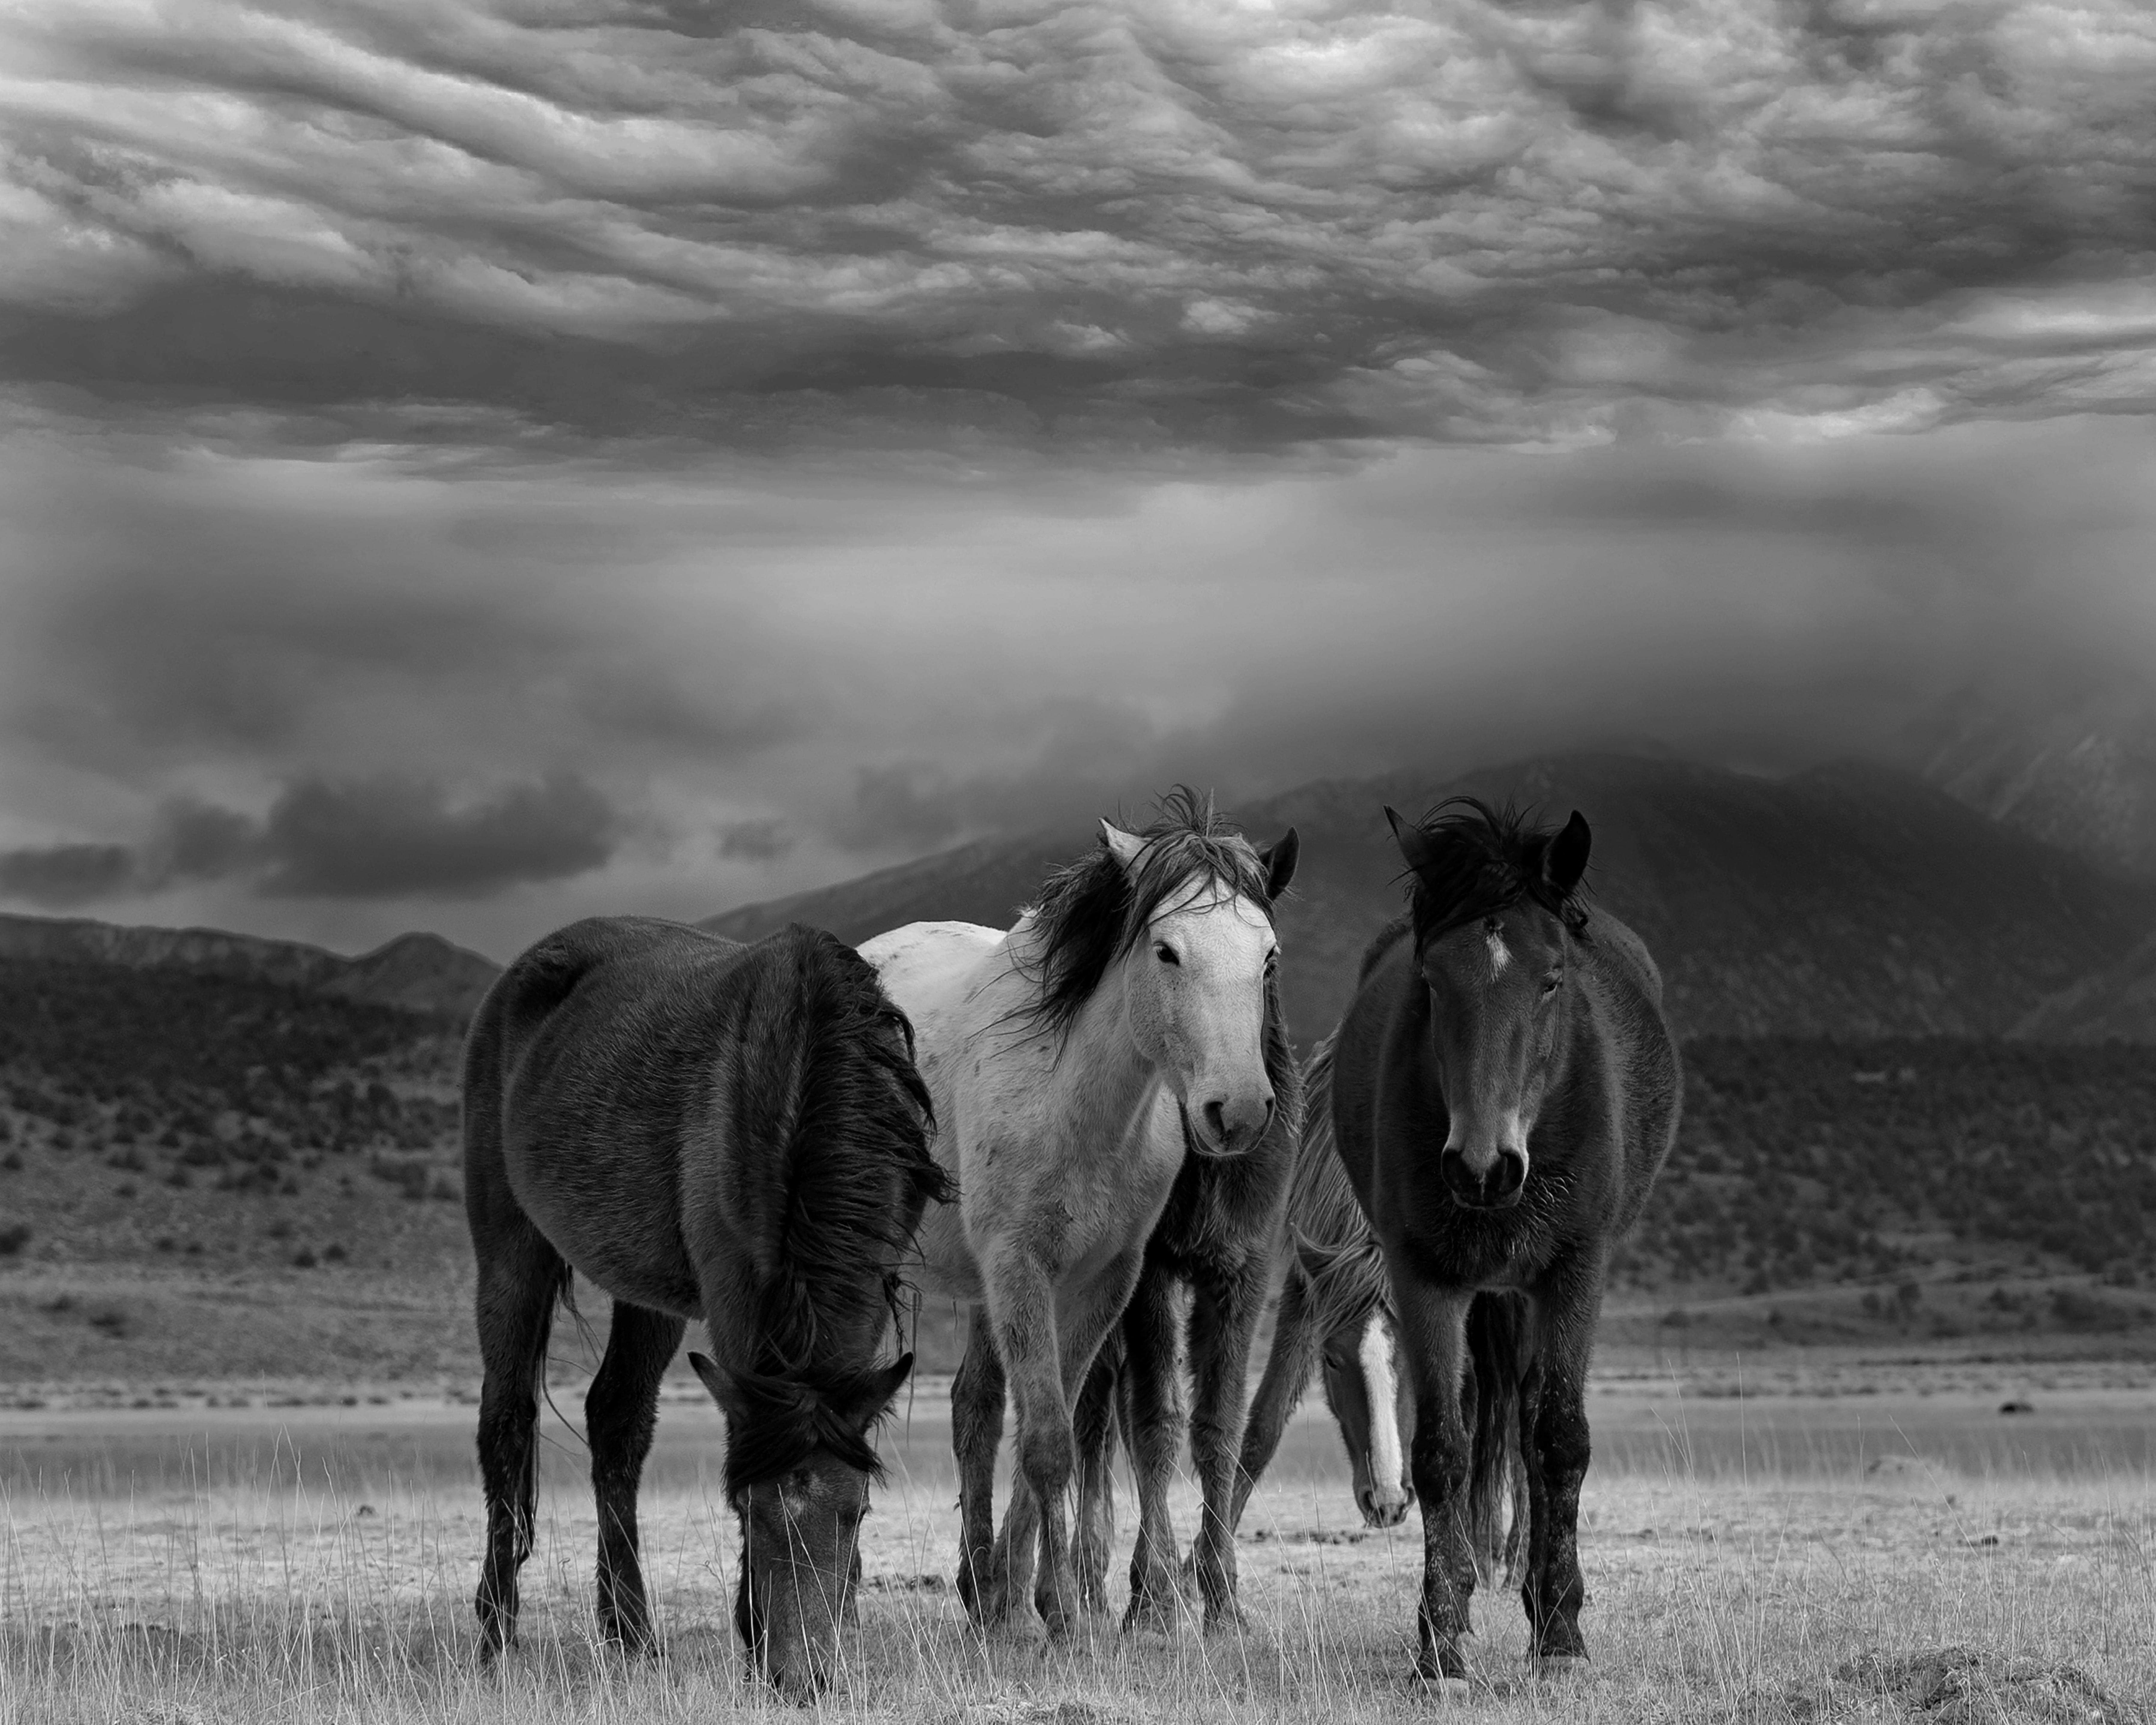 Animal Print Shane Russeck - Duvet et chevaux 45x60  Photographie en noir et blanc Chevaux sauvages Mustangs Non signé